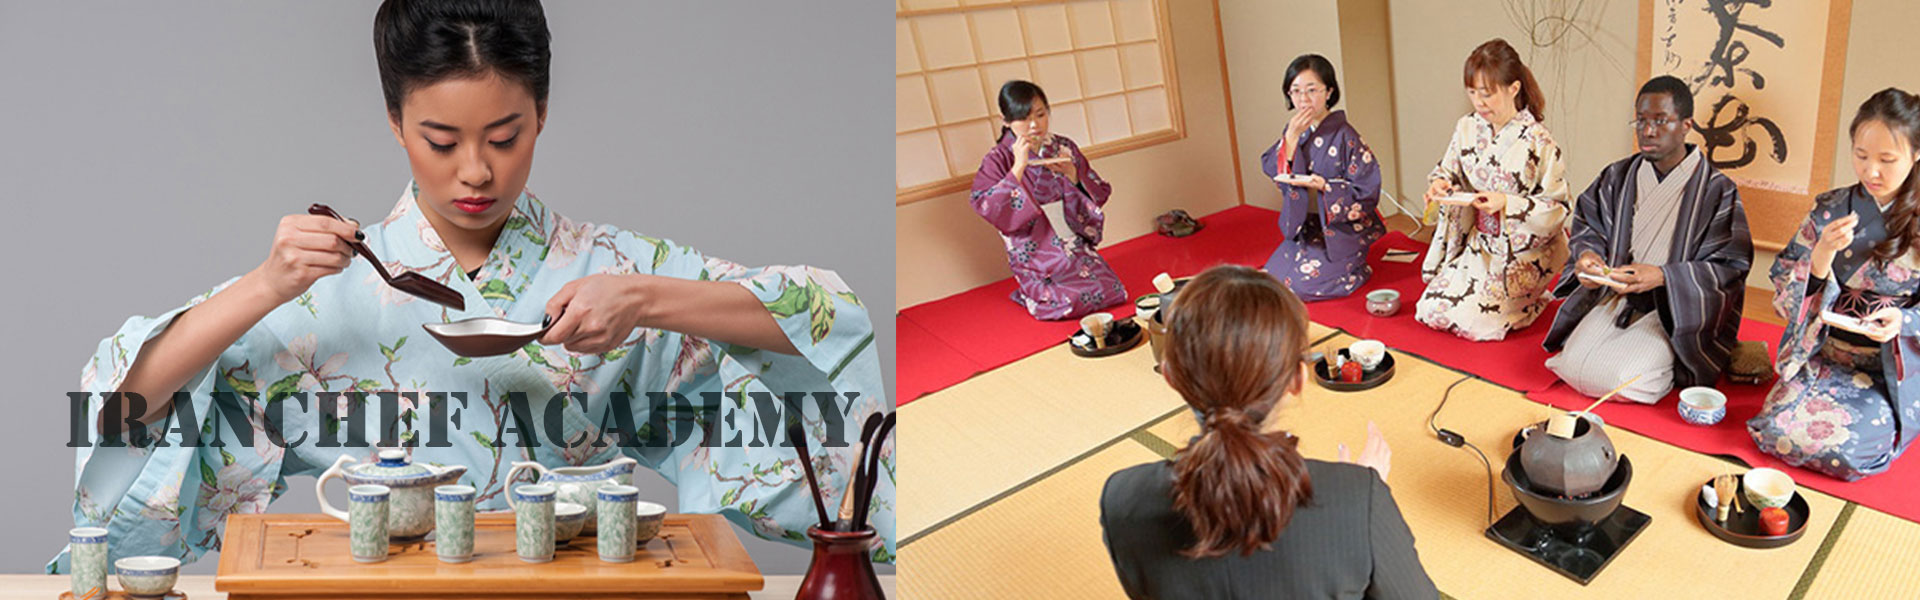 مراسم چای کشور ژاپن- فرهاد زعفری مدرس دانشگاه محقق غذا